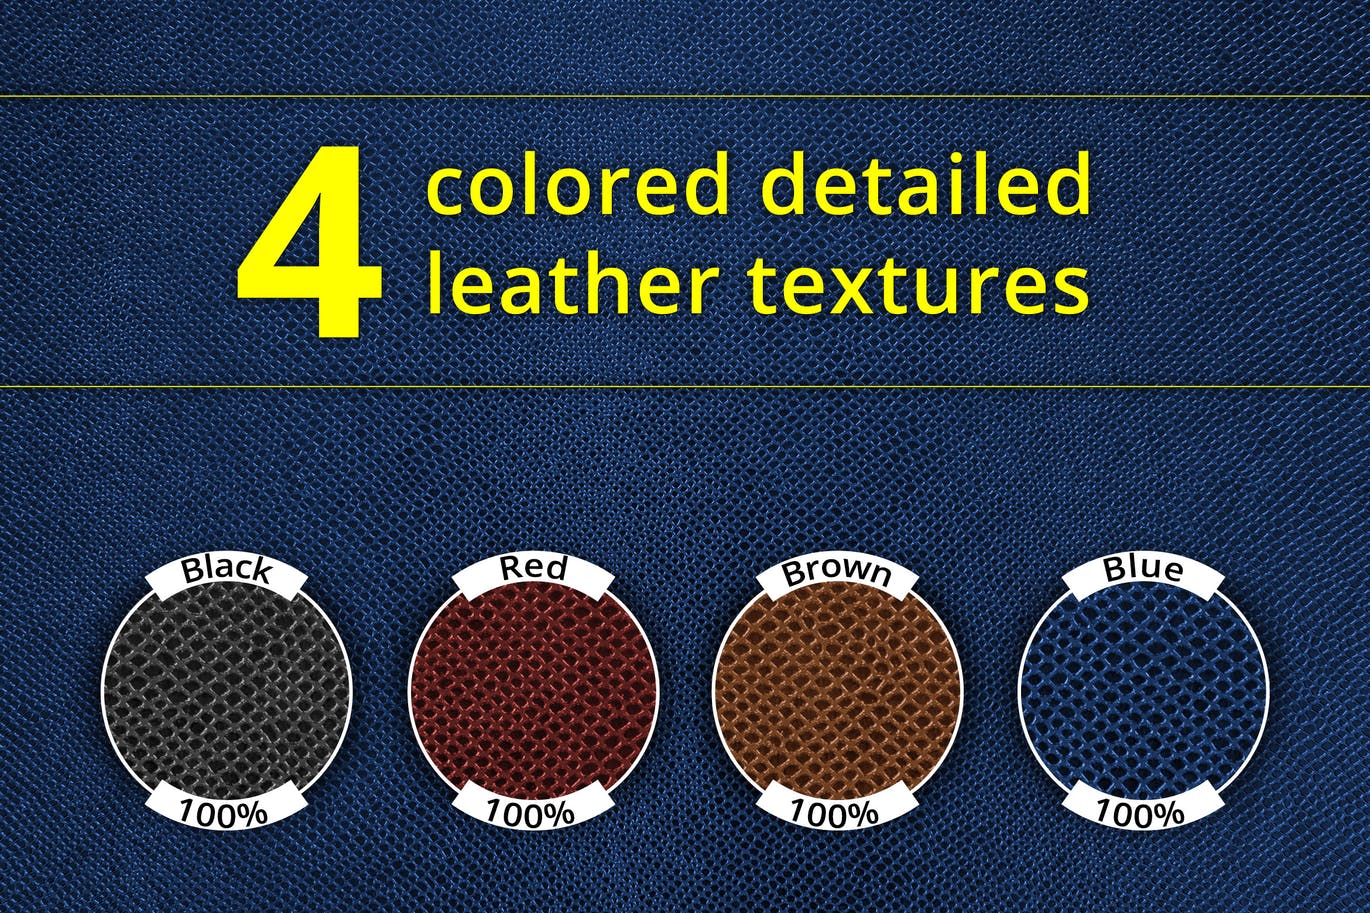 荔枝纹皮革材质纹理素材 Set of 4 leather textures设计素材模板